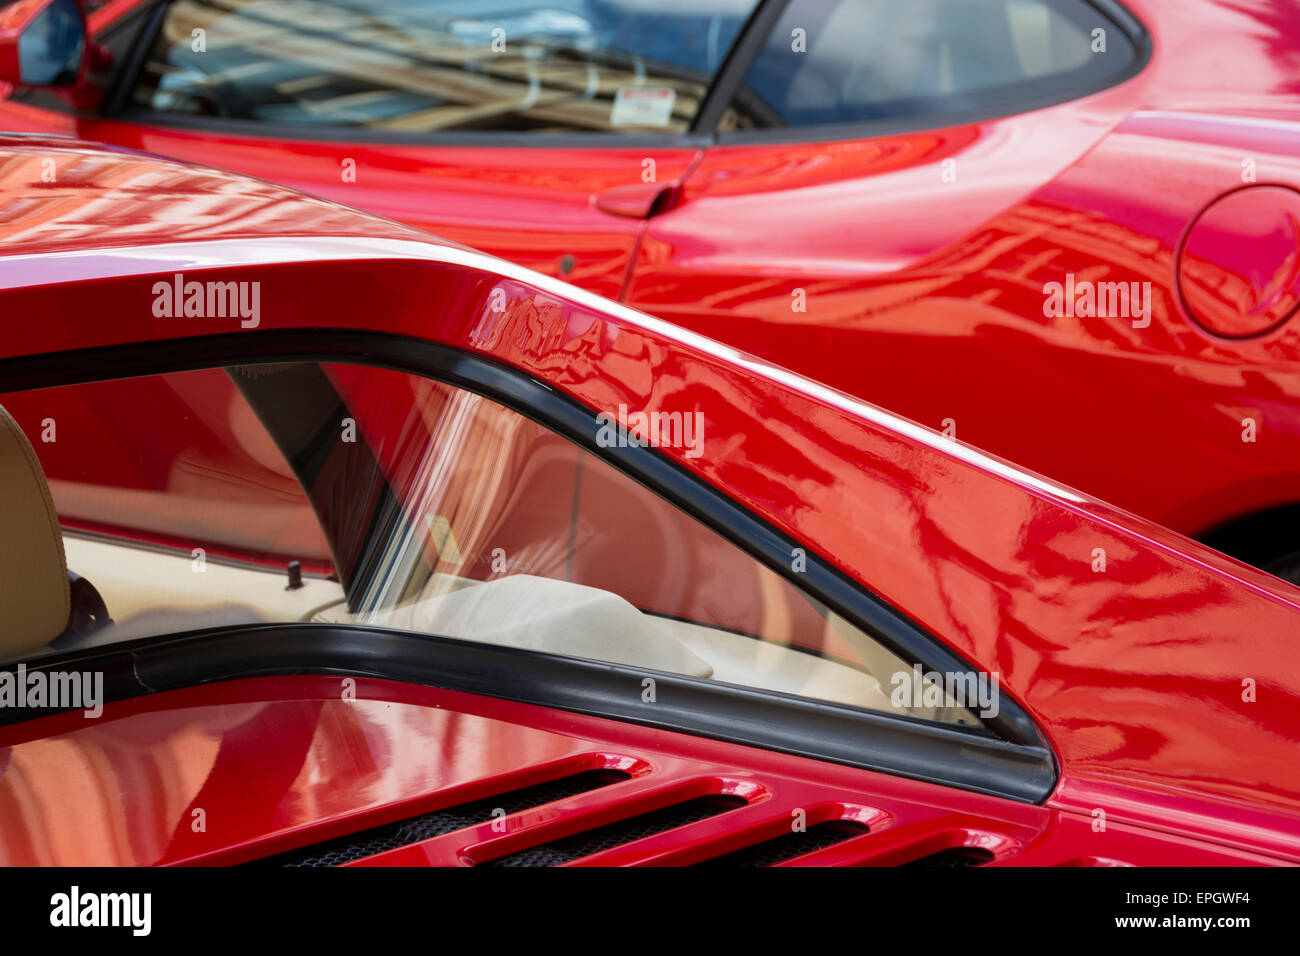 Dettaglio delle due red Ferraris al Bristol Automoto Italiano Fiera, mostra proprio le loro curve. Foto Stock